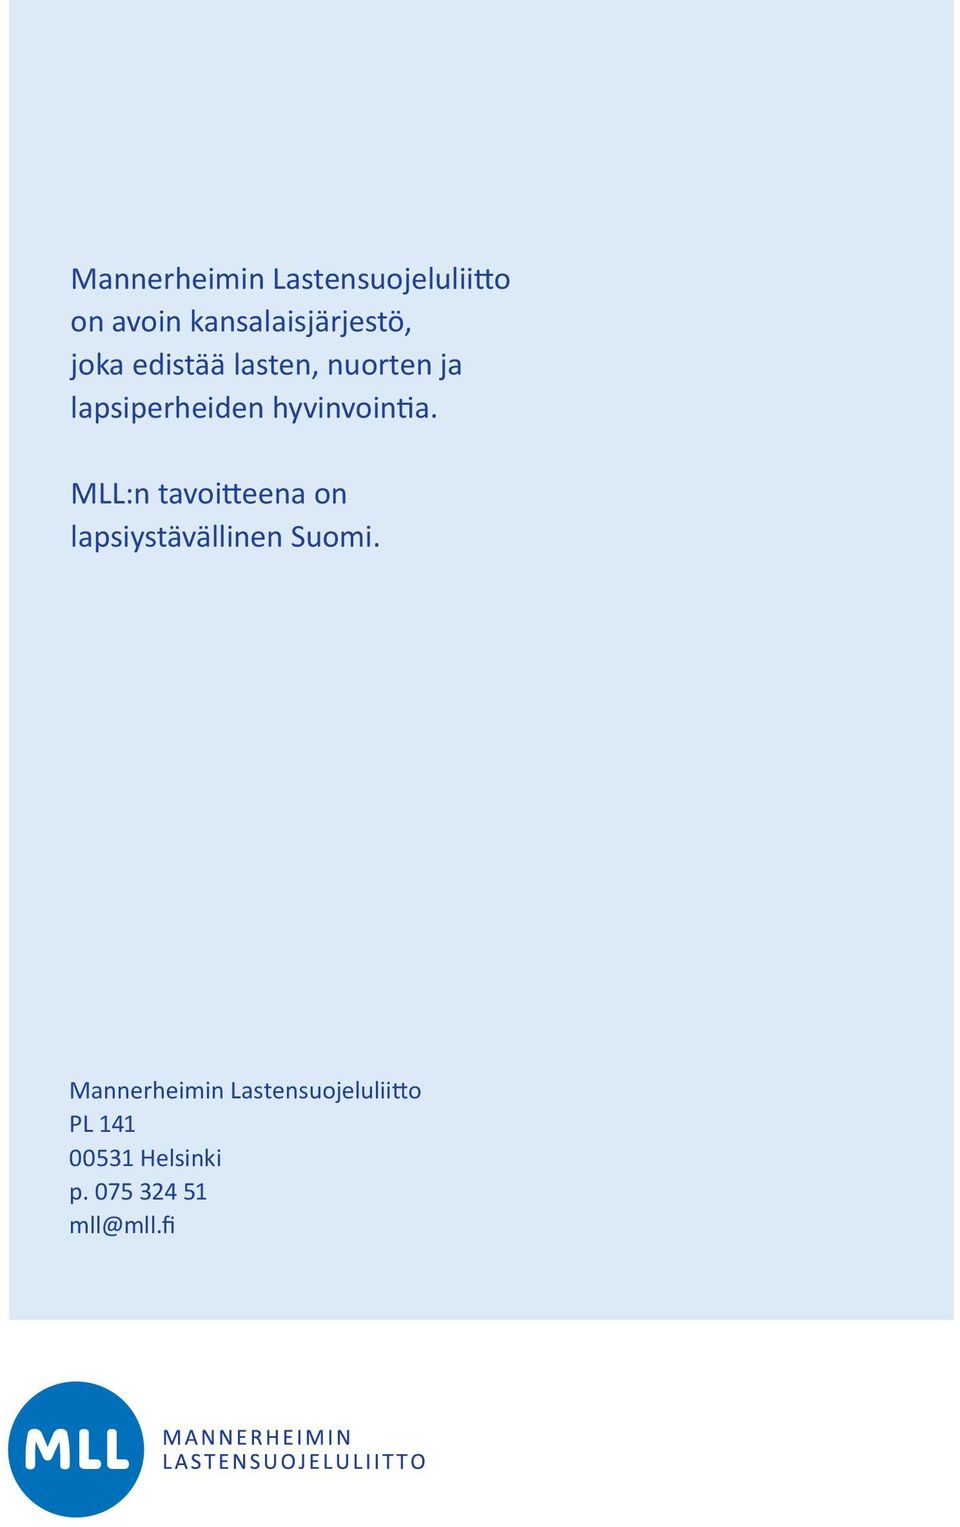 MLL:n tavoitteena on lapsiystävällinen Suomi.